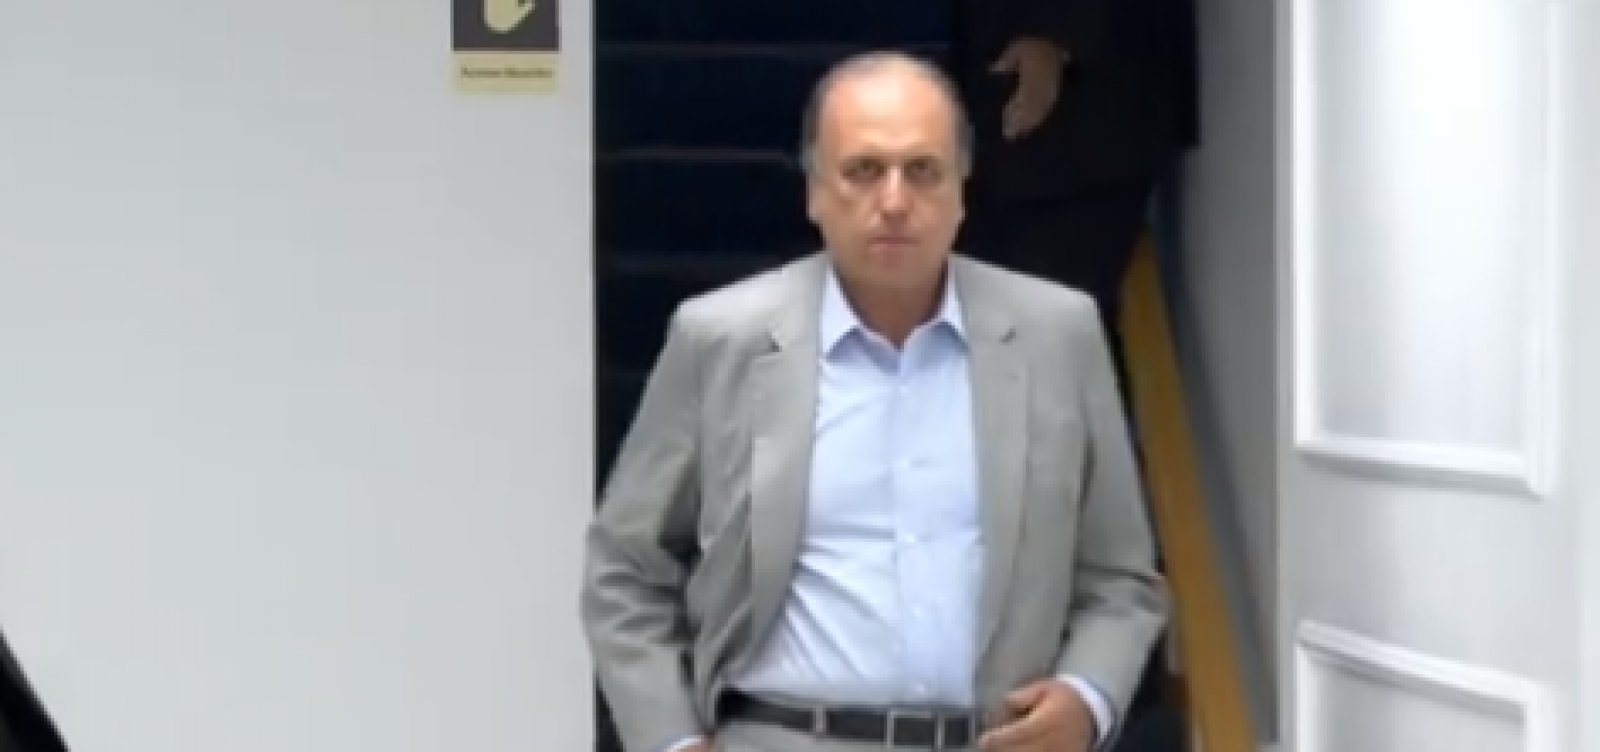 STJ manda soltar ex-governador Luiz Fernando Pezão